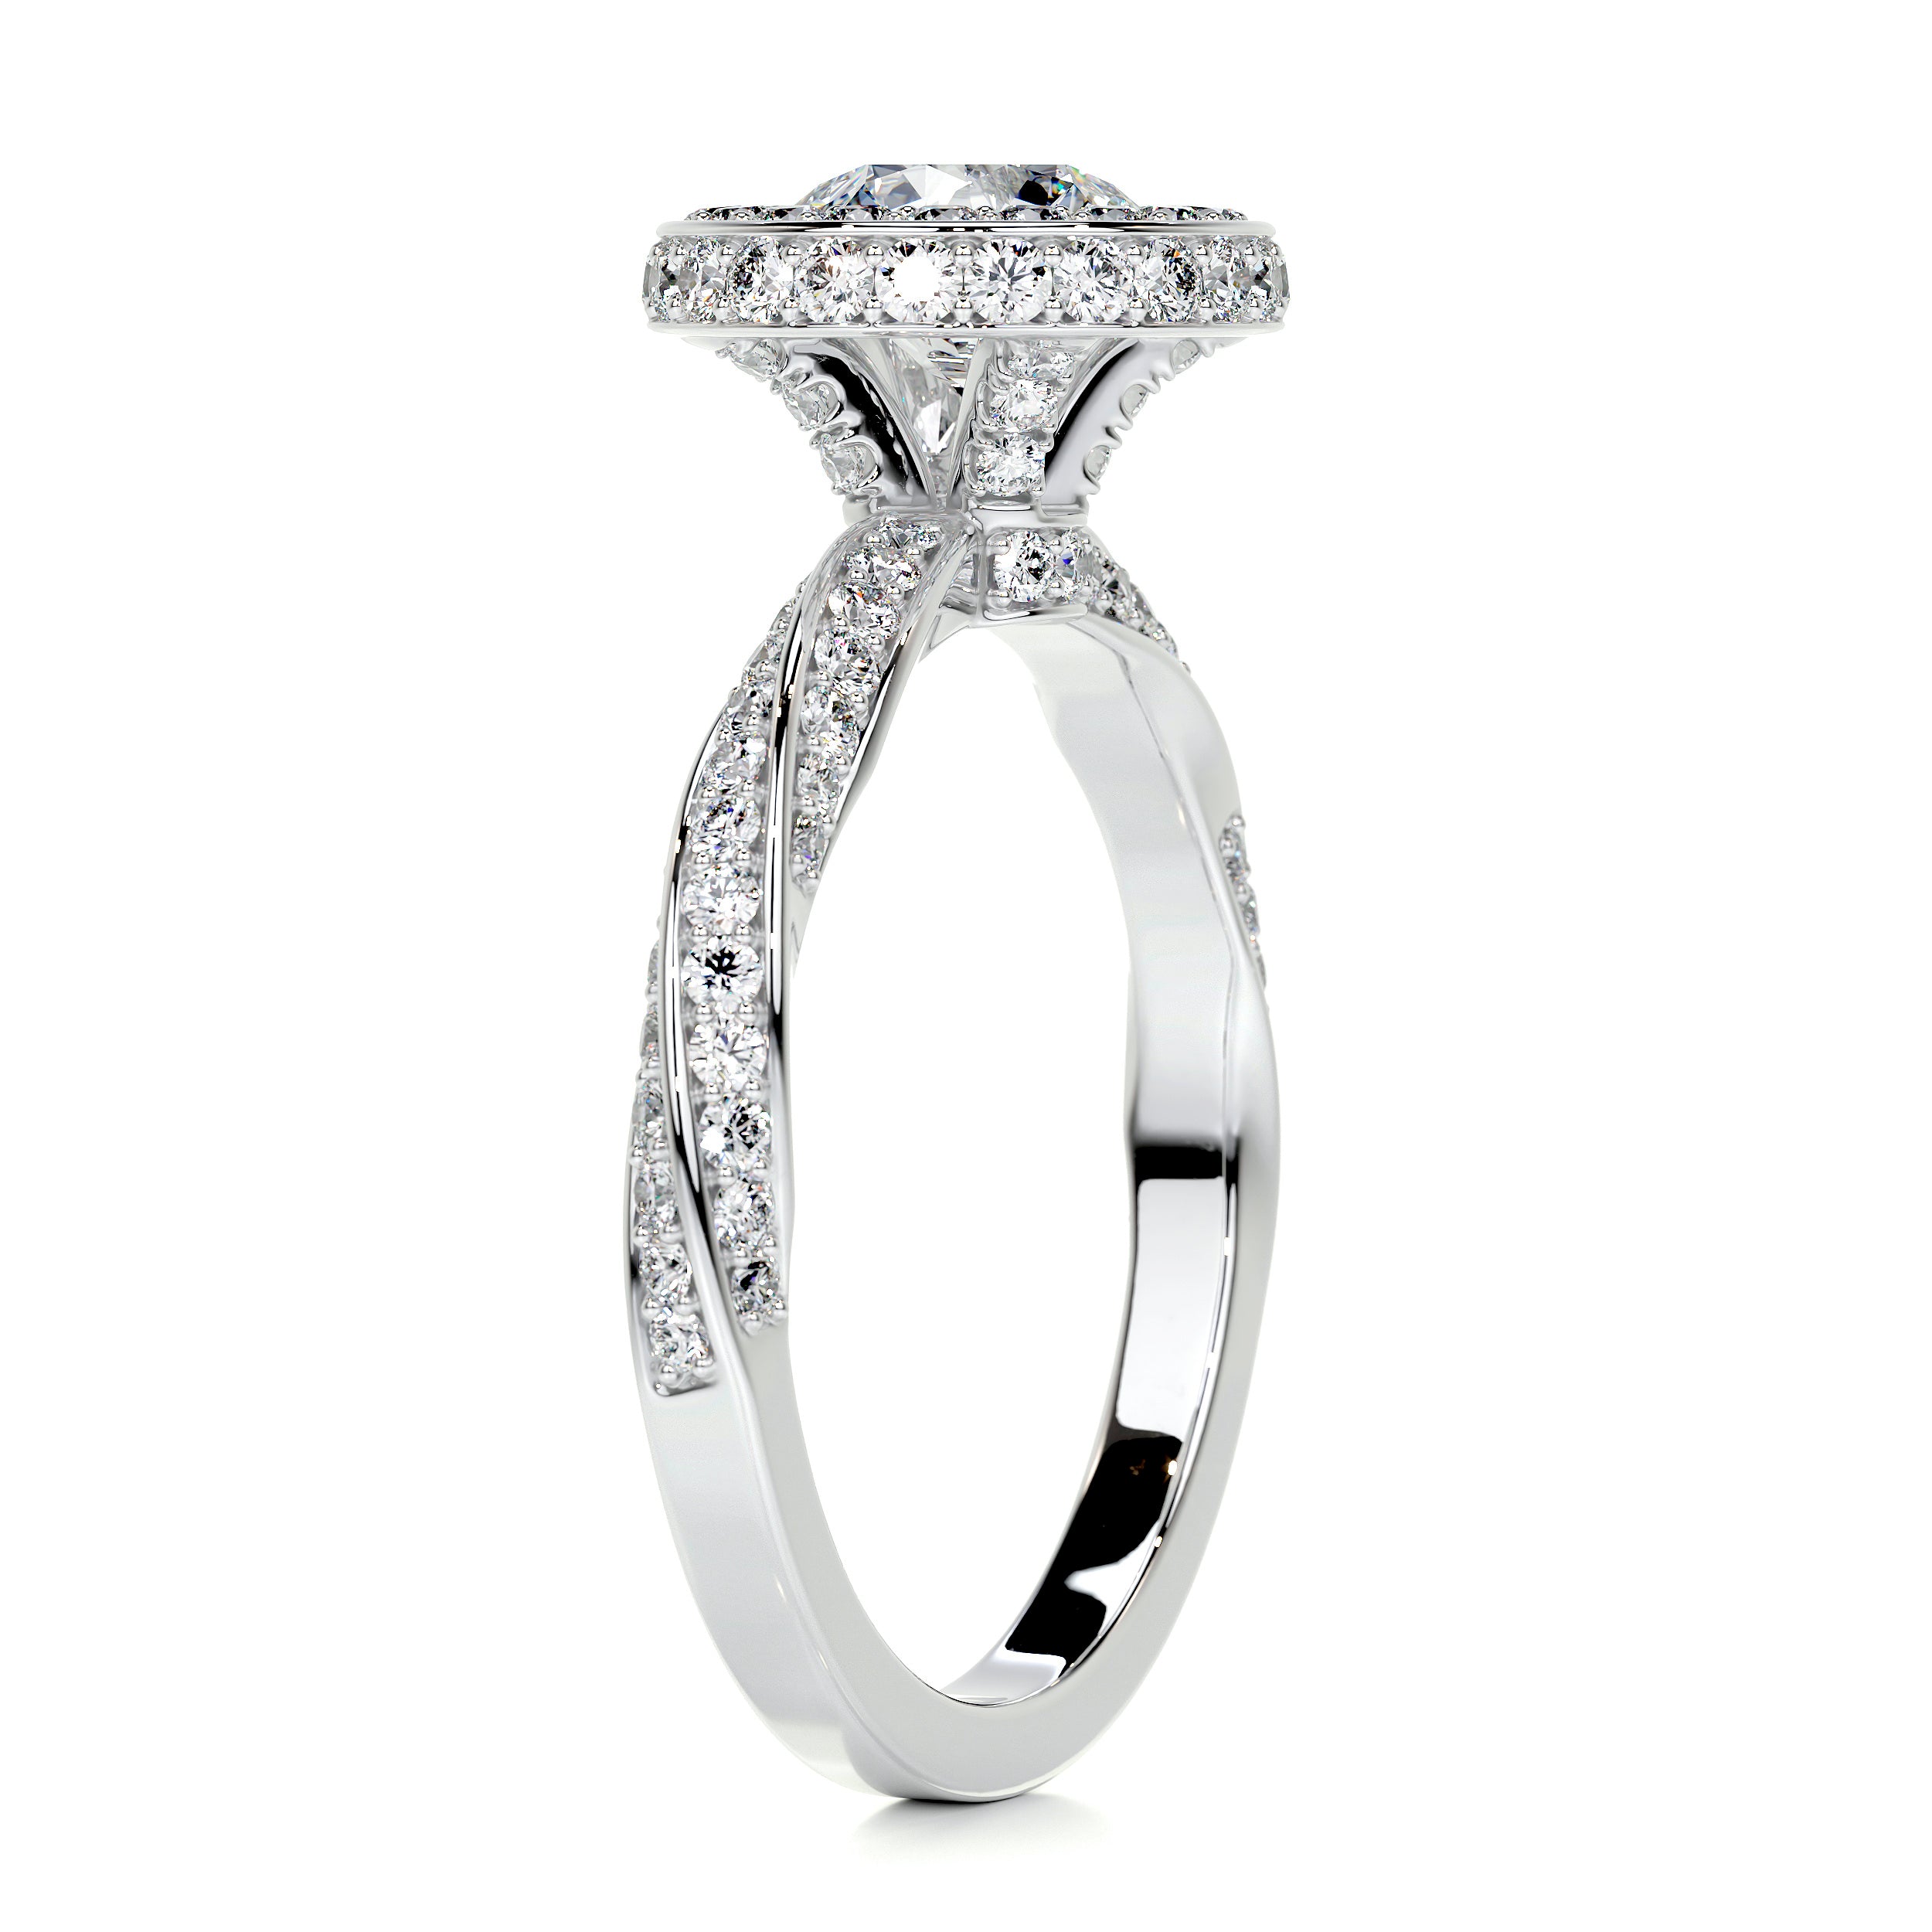 Sarina Diamond Engagement Ring   (1.7 Carat) -18K White Gold